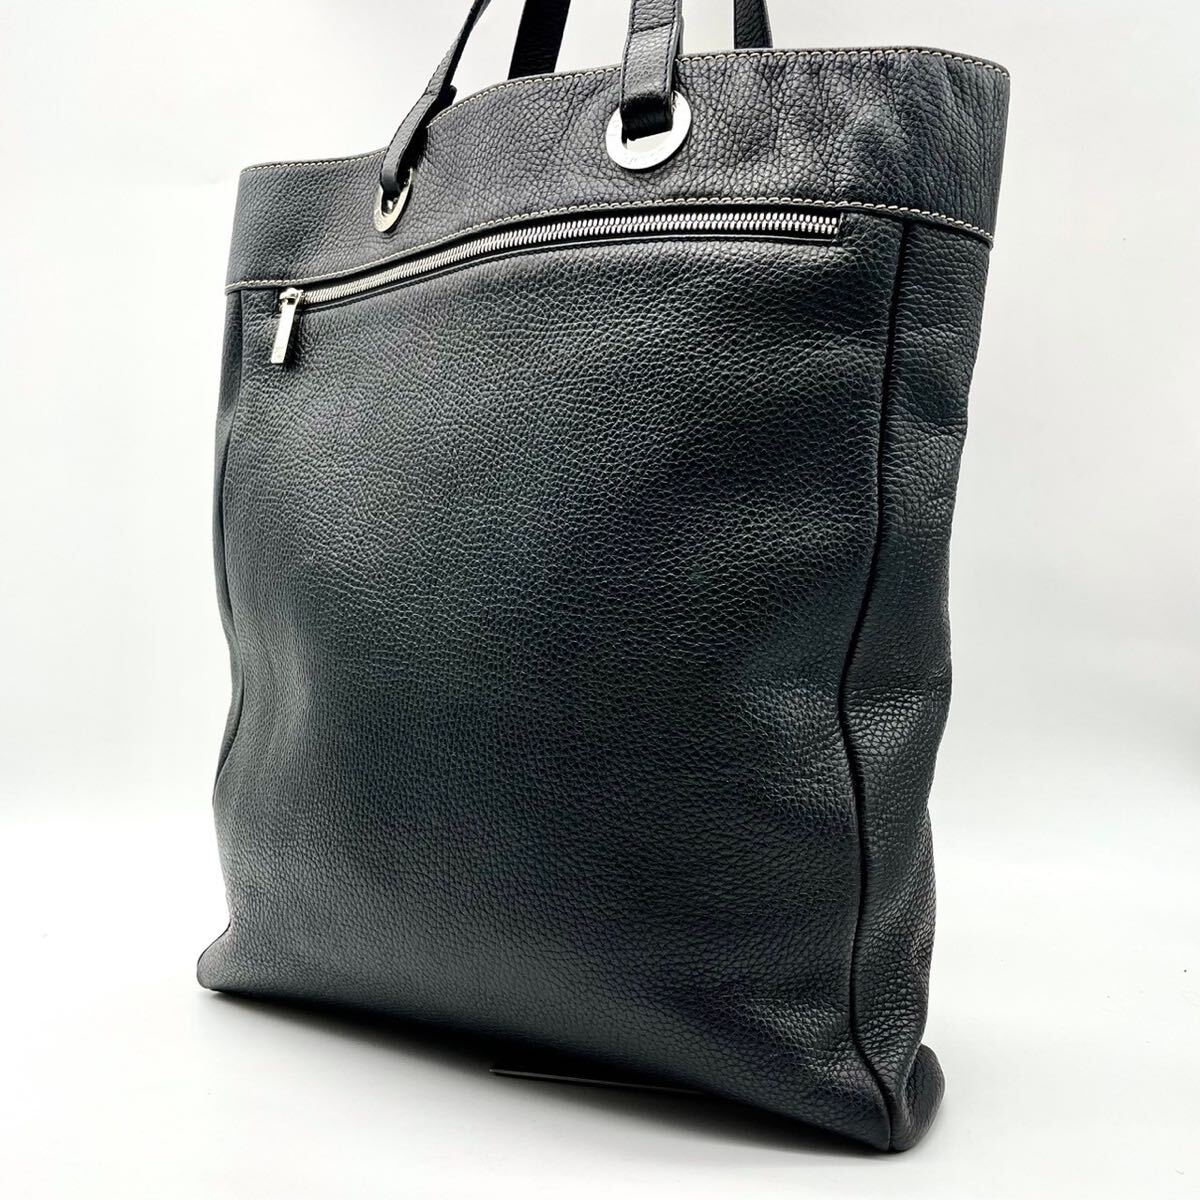  превосходный товар Loewe LOEWE мужской бизнес большая сумка все кожа серебряный металлические принадлежности Logo дыра грамм черный чёрный A4 место хранения работа портфель сумка 